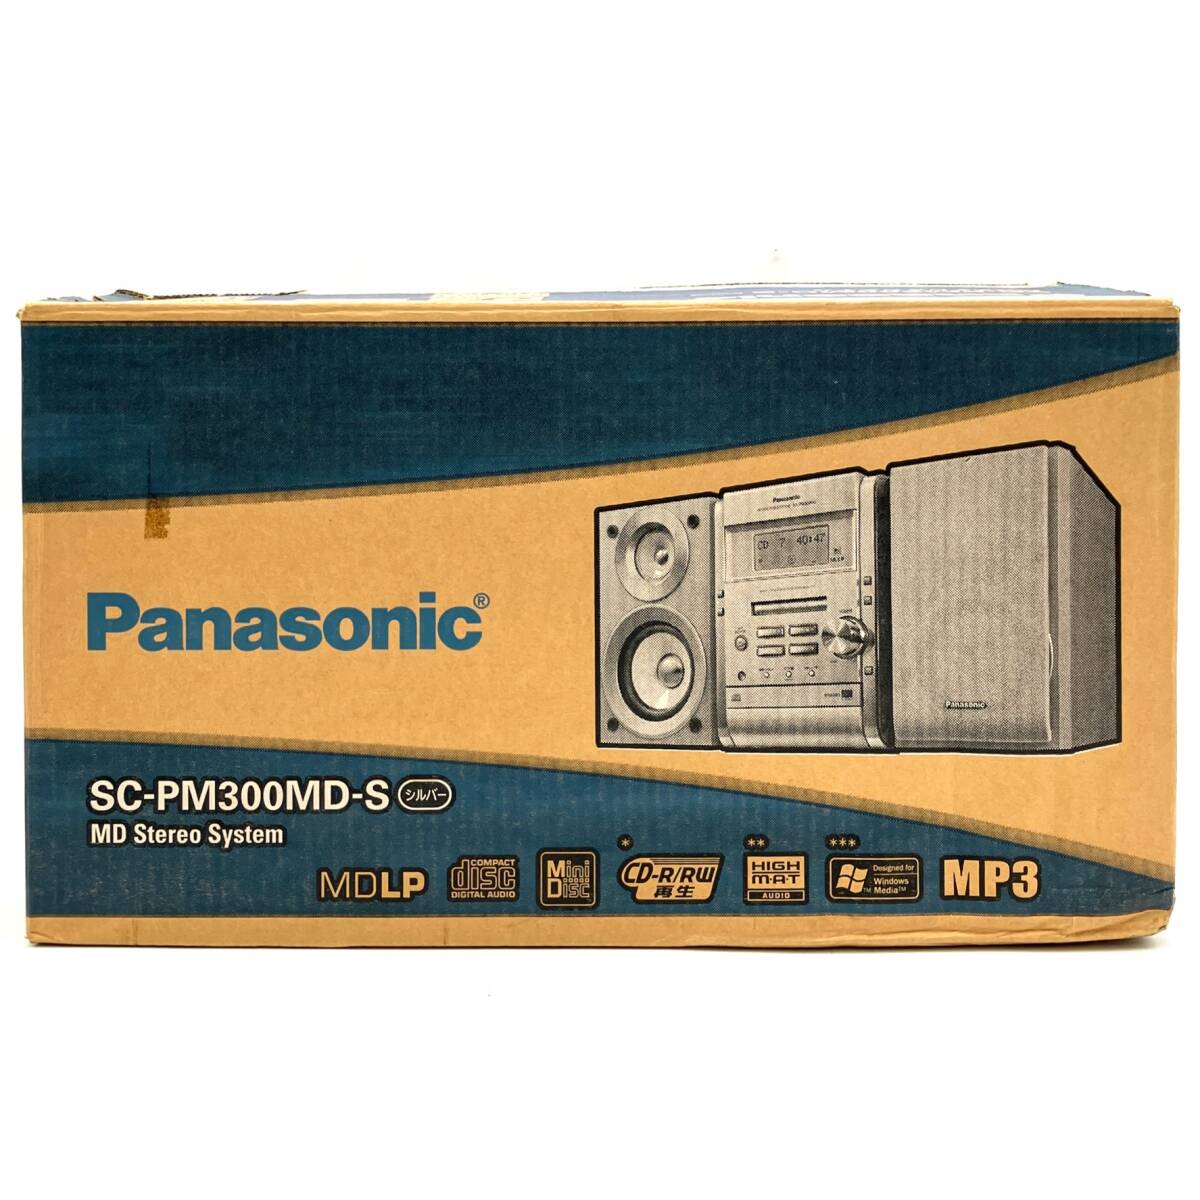  не использовался [Panasonic SC-PM300MD-S MD стерео система серебряный ] Panasonic проигрыватель текущее состояние товар D-4605